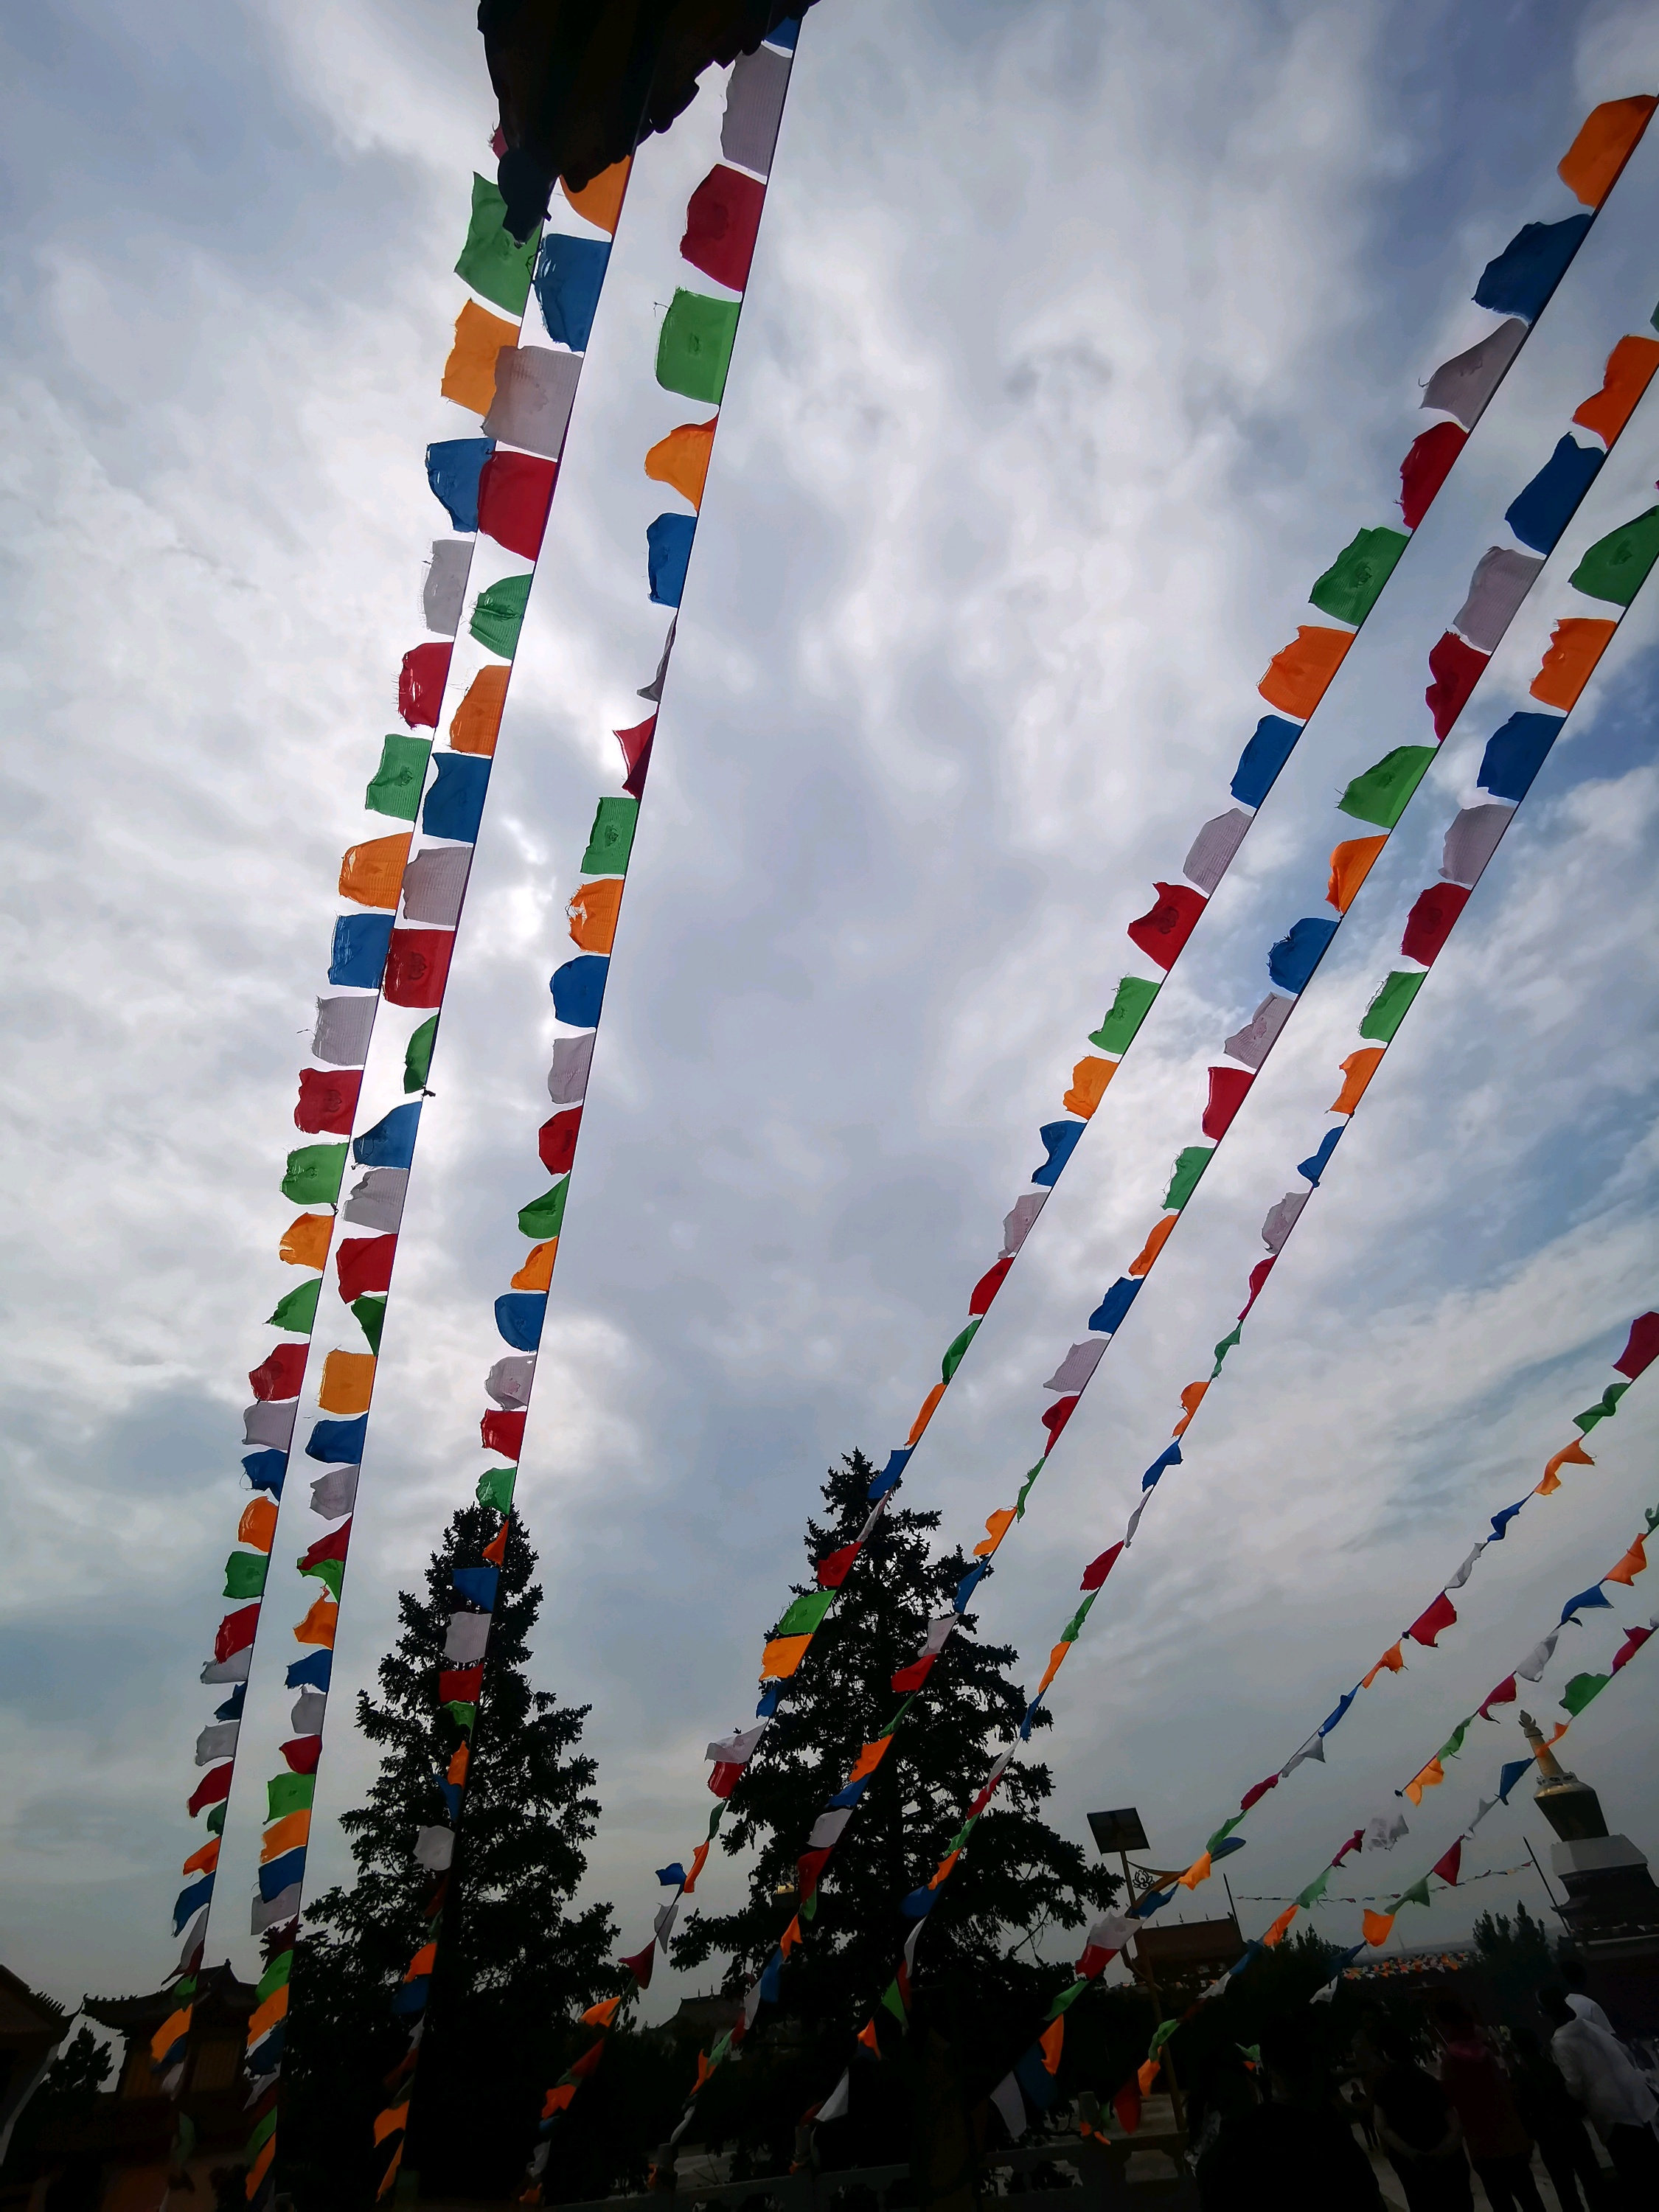 第一次走进了一座蒙族地区的喇嘛寺院-葛根庙